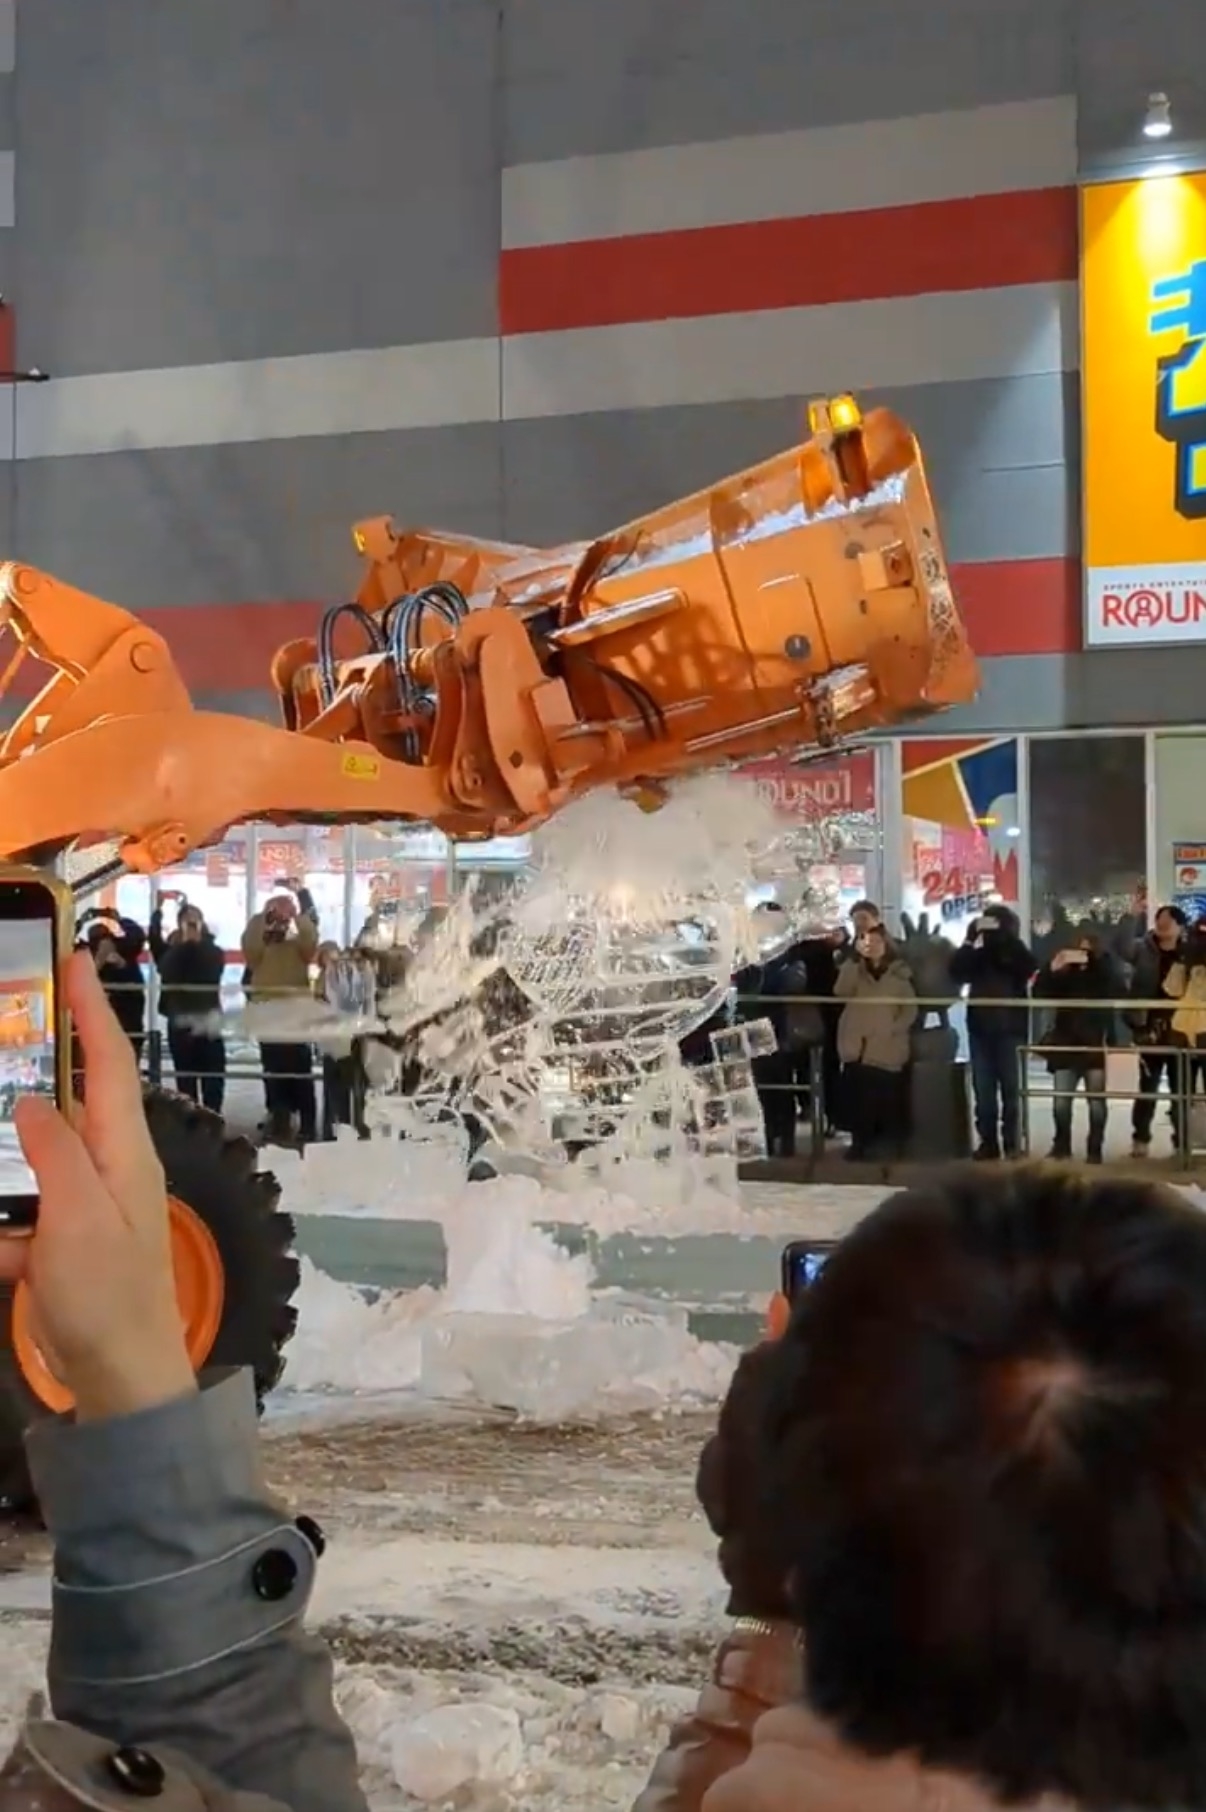 オレンジ色の建設用ショベルが氷の彫刻を破壊している様子。見物人が周囲にいる。